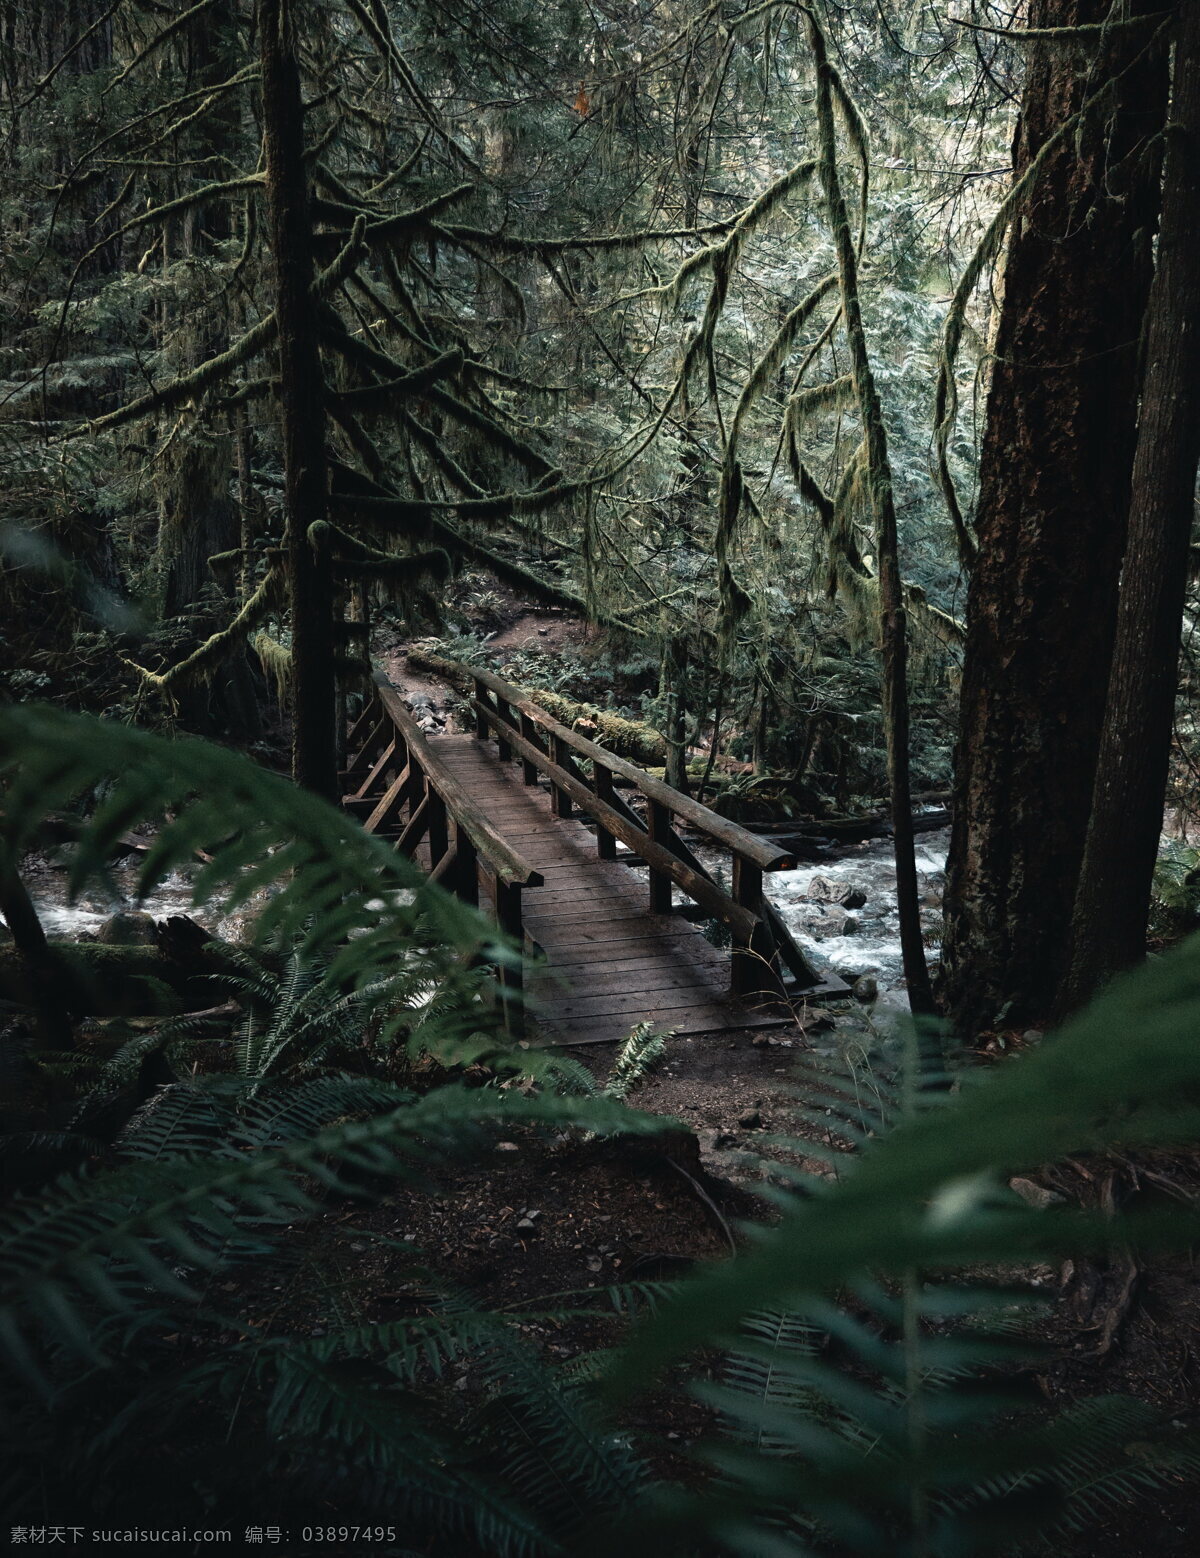 竖 屏 大自然 森林 风景 森林风景图片 森林风景 竖屏 树林 木桥 流水 小桥流水 自然风景 图片大全 高清图片下载 共享素材 自然景观